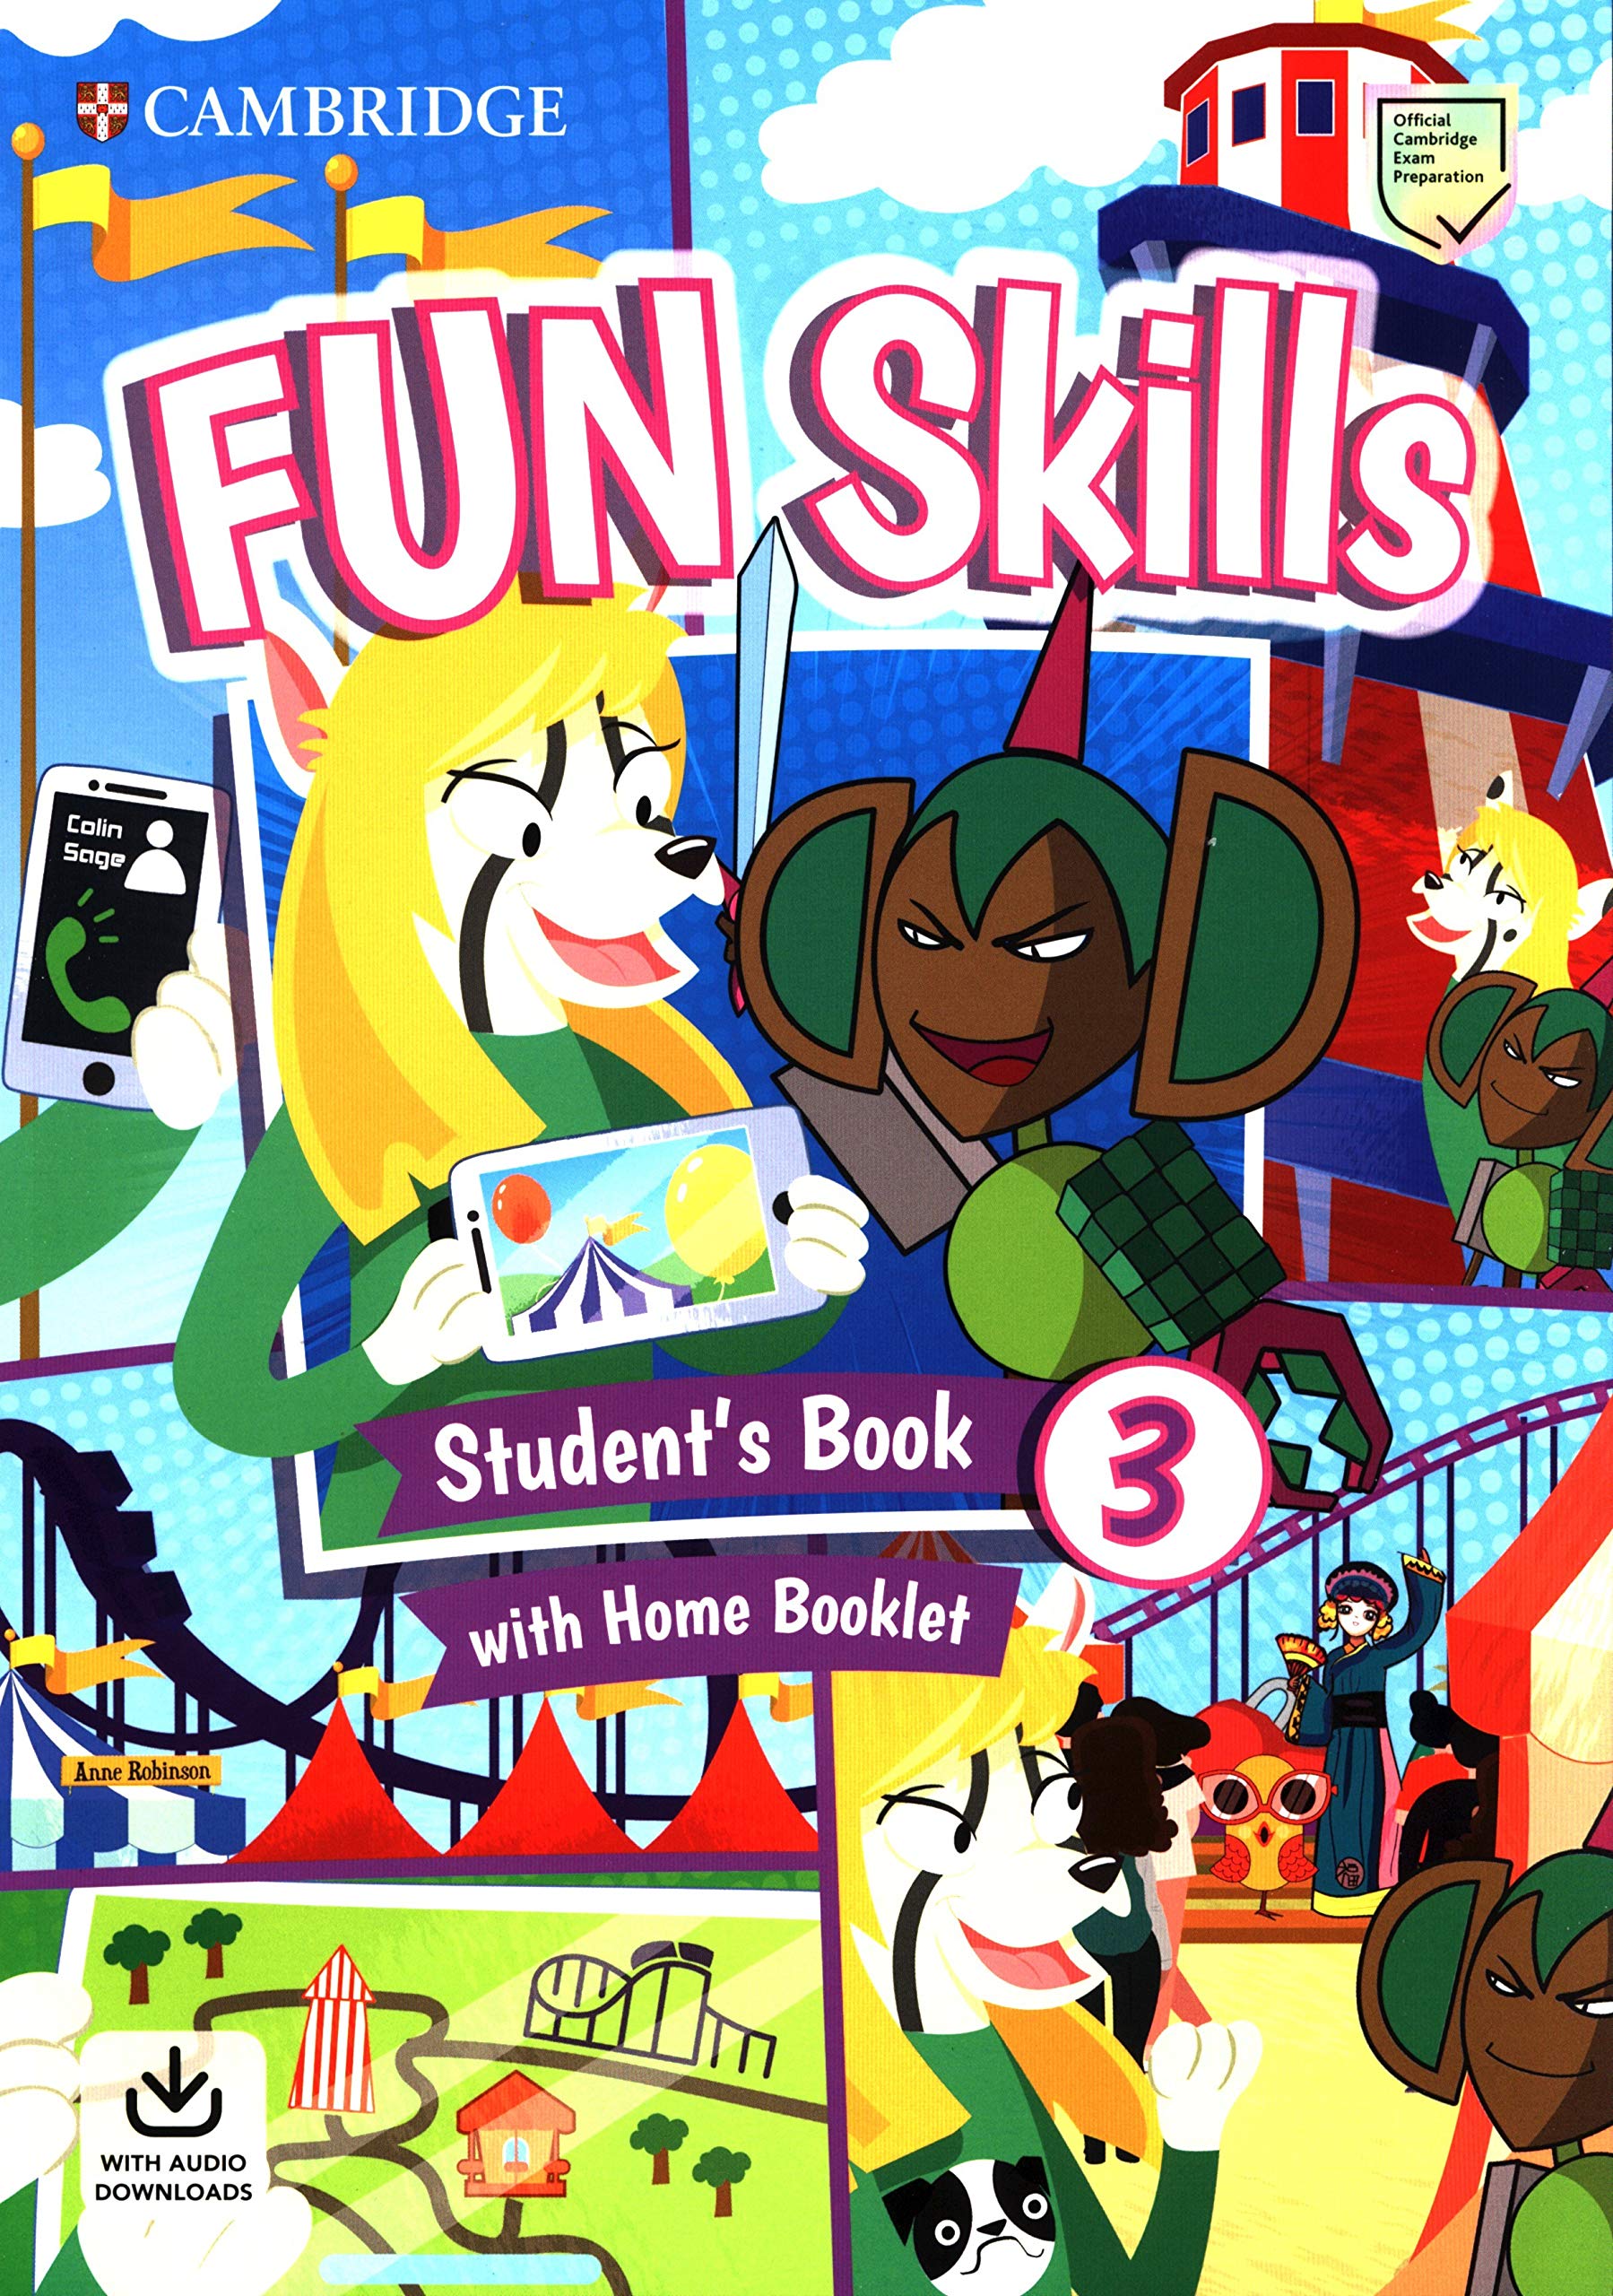 Fun курс. Fun skills. Fun skills Cambridge. Fun skills 3. Fun skills 1 student's book.